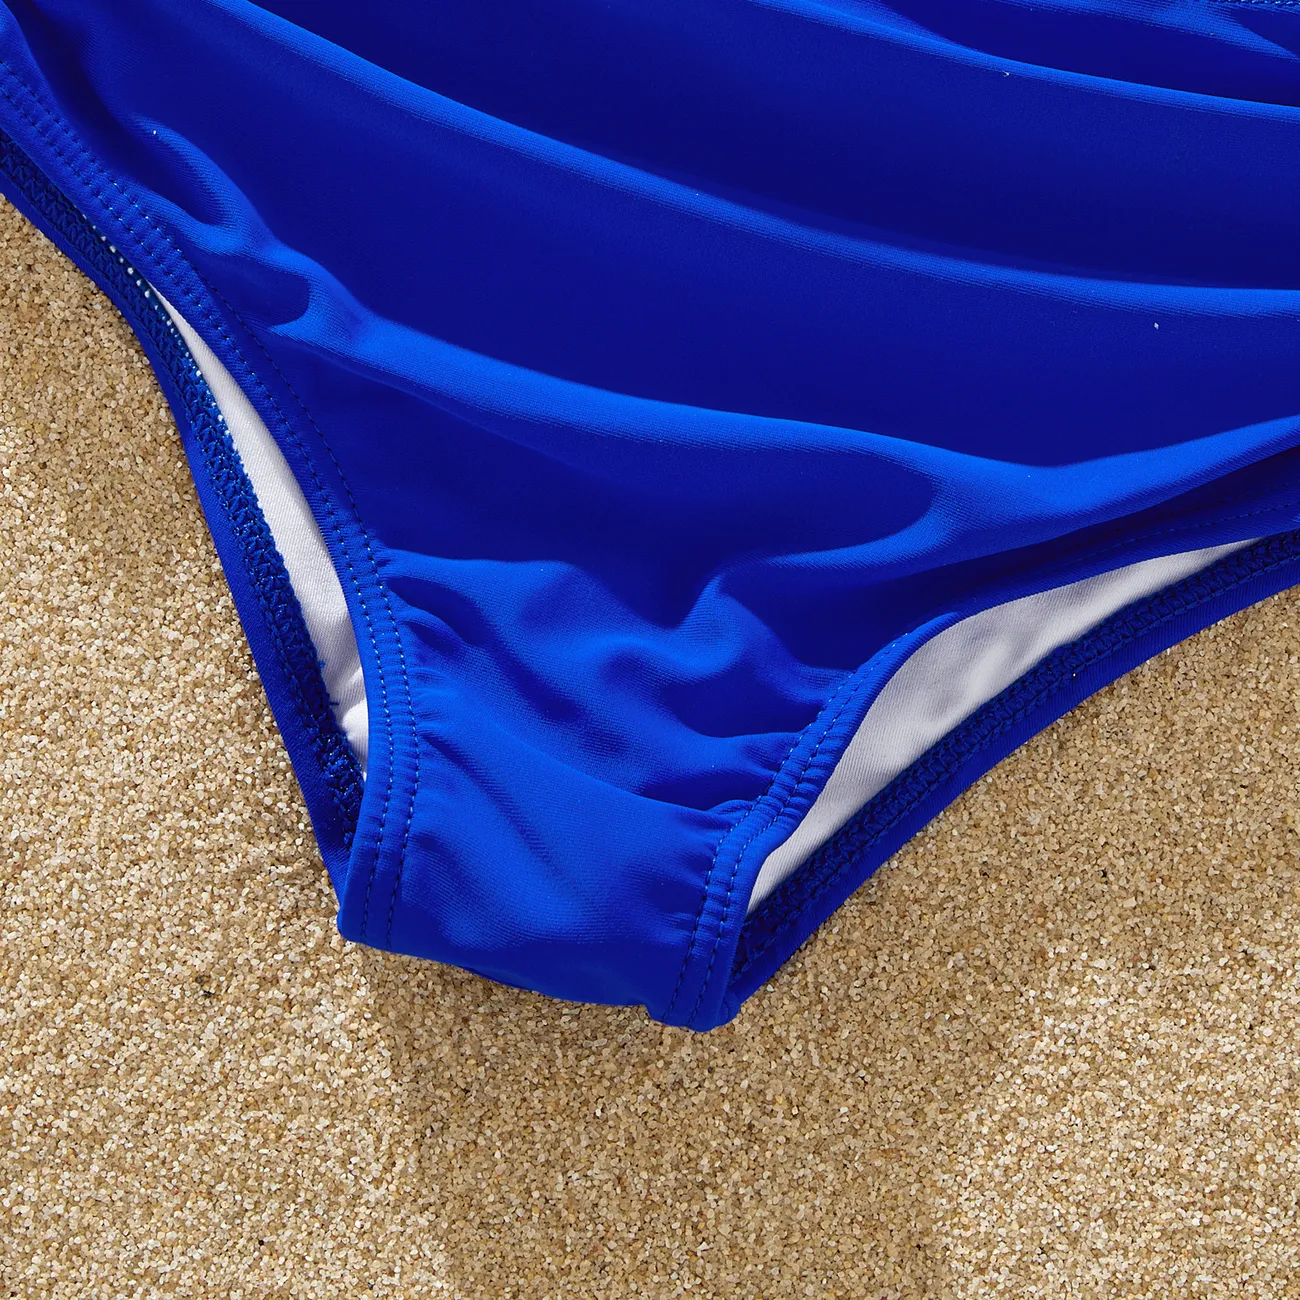 ملابس السباحة إطلالة العائلة للجنسين كم فضفاض بكشكشة لون سادة أزرق big image 1